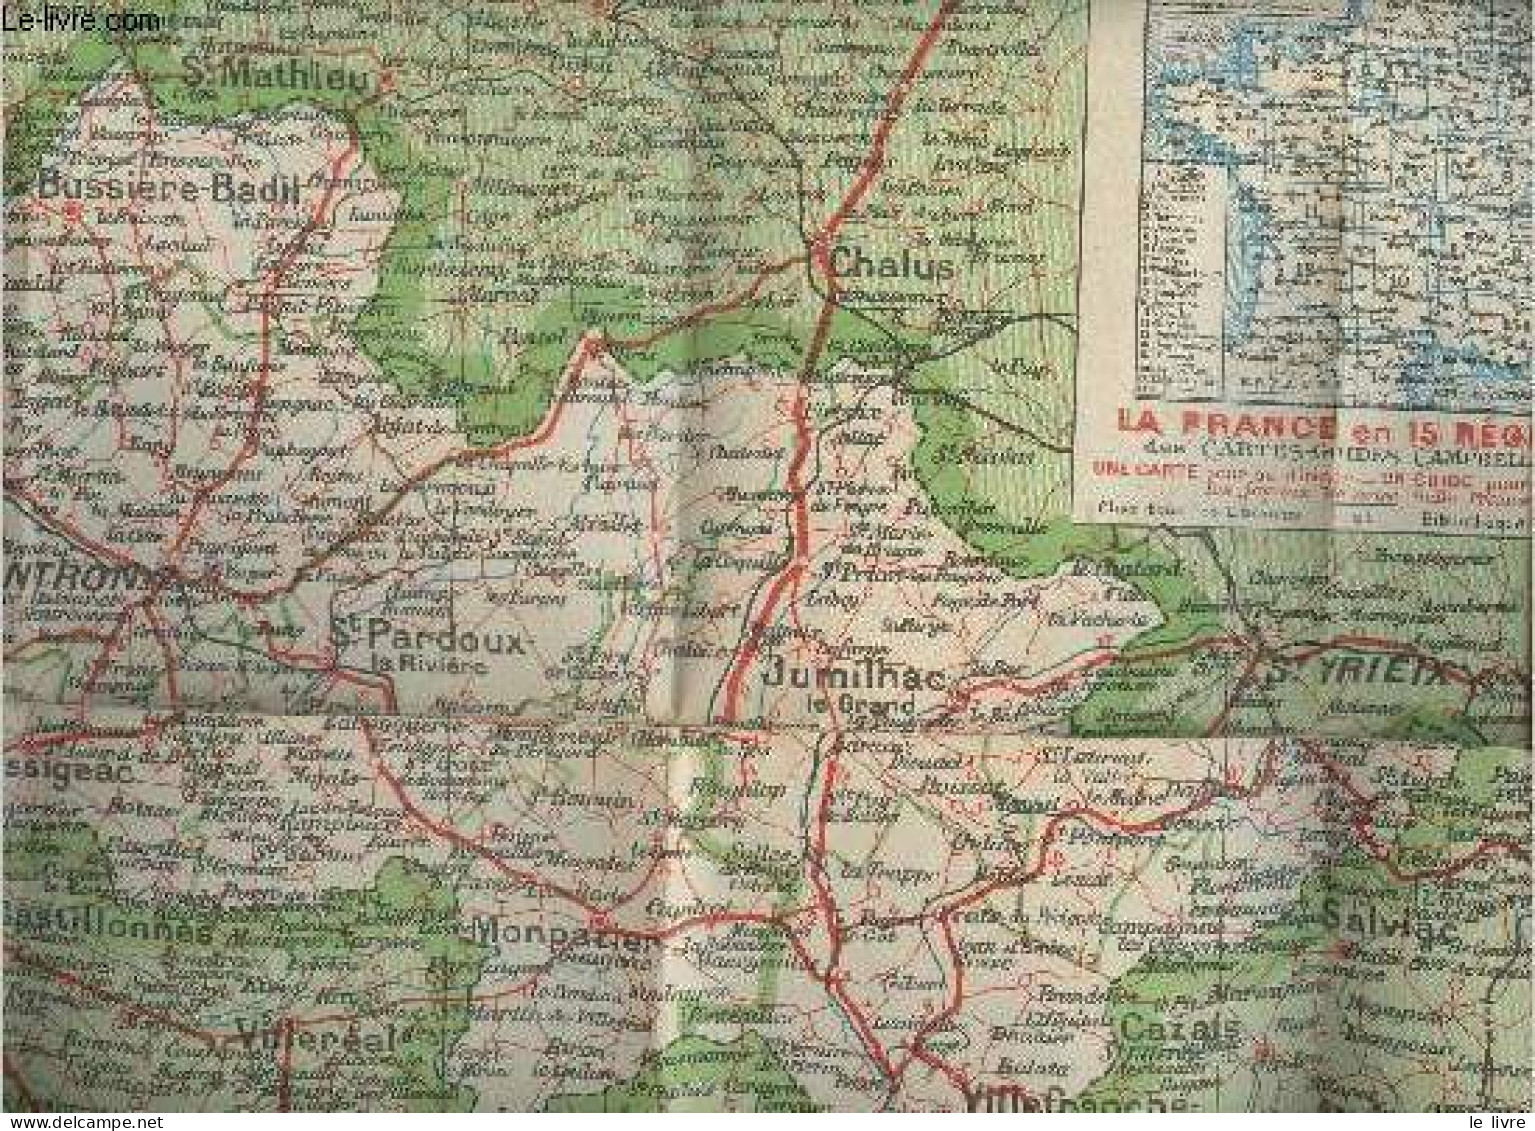 Collection Des Cartes Départementales De La France N°24 Dordogne Au 200.000e- Cartes Blondel De La Rougery - Collectif - - Maps/Atlas